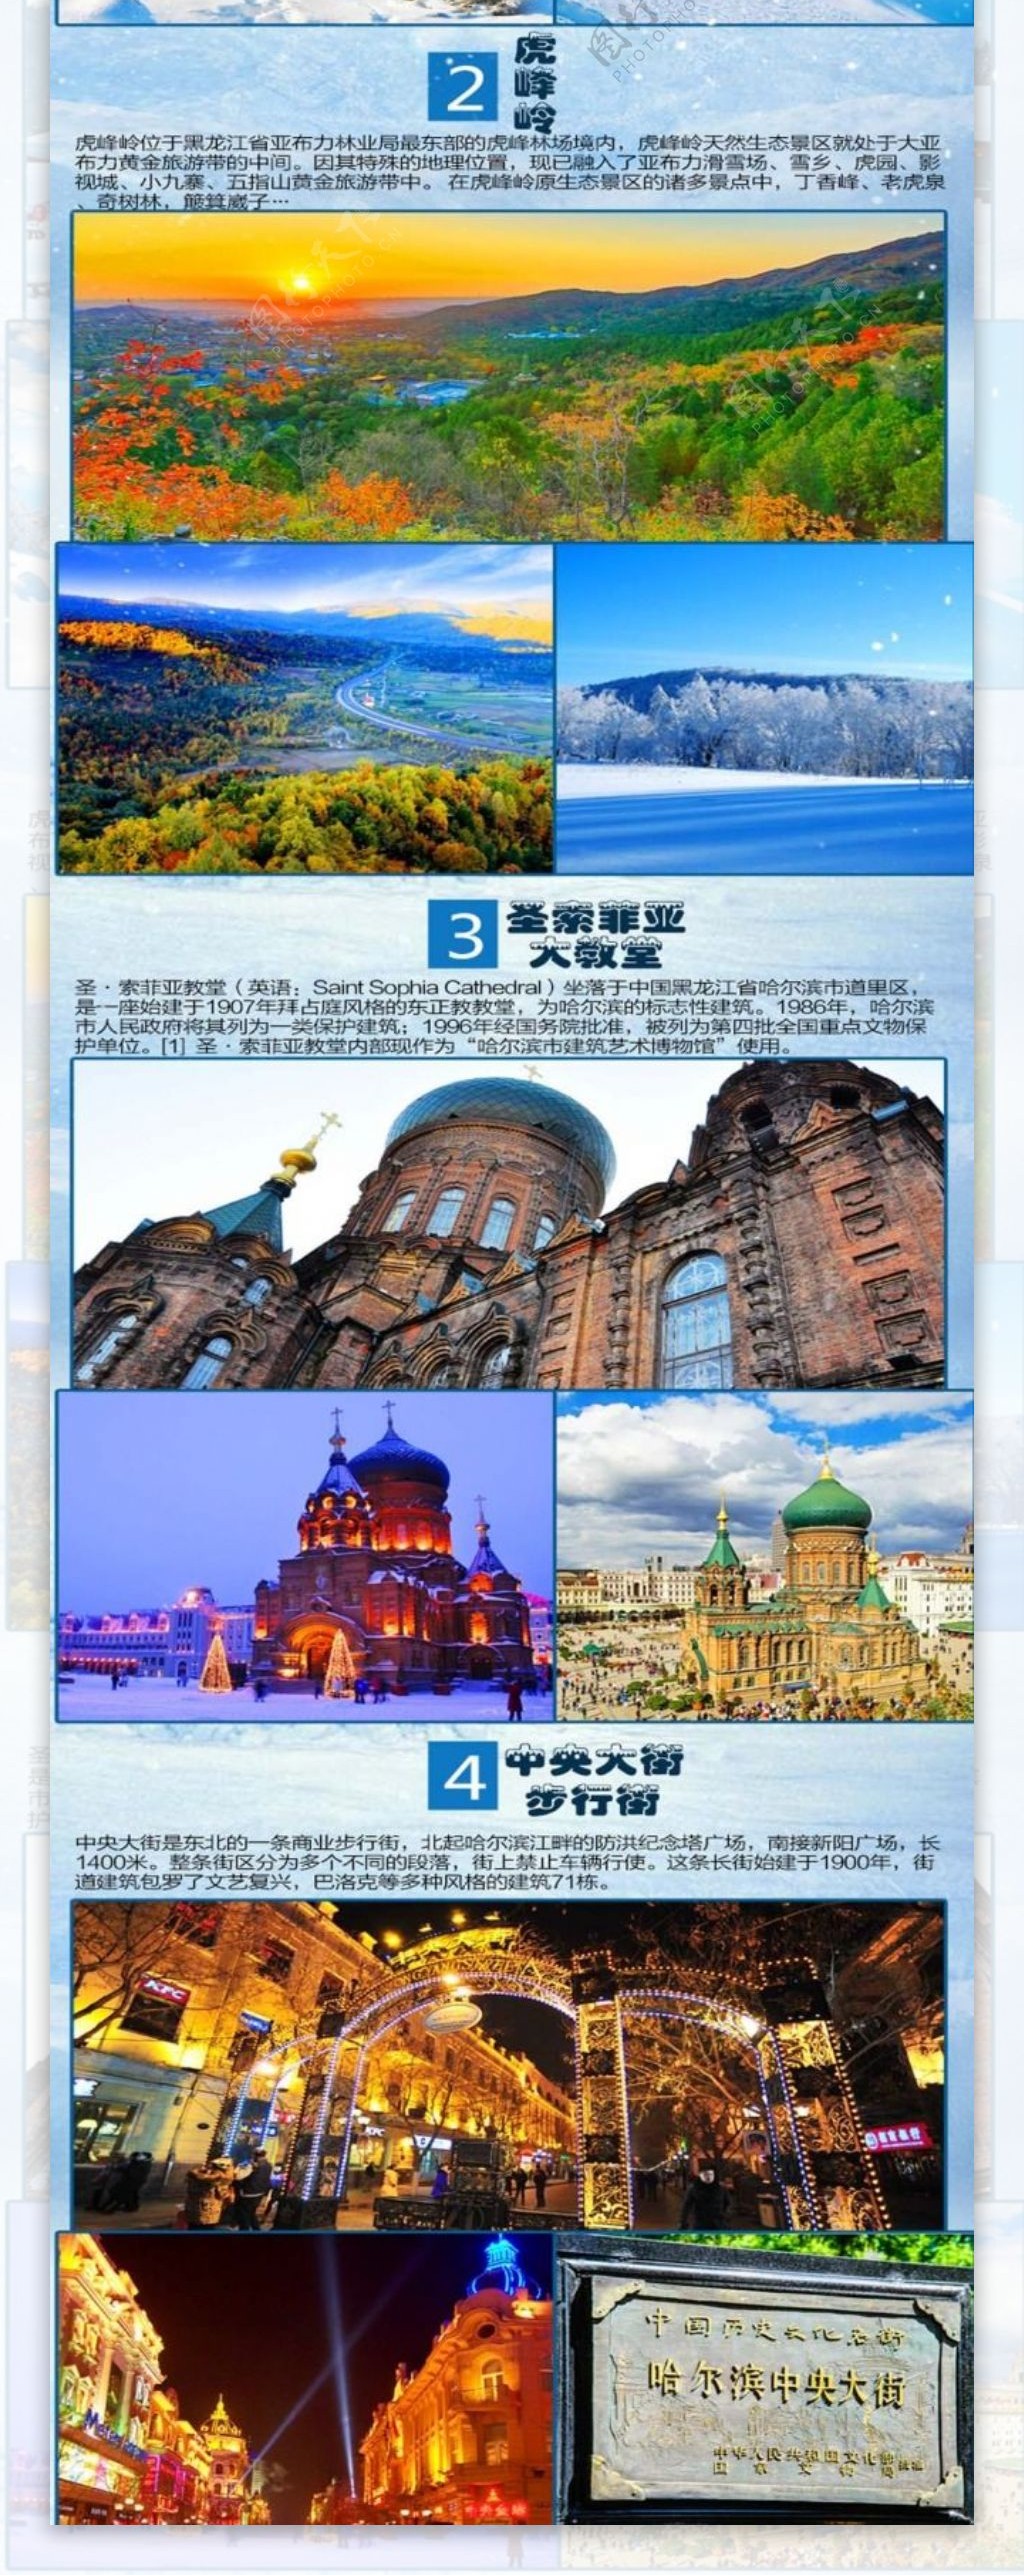 哈尔滨旅游详情图